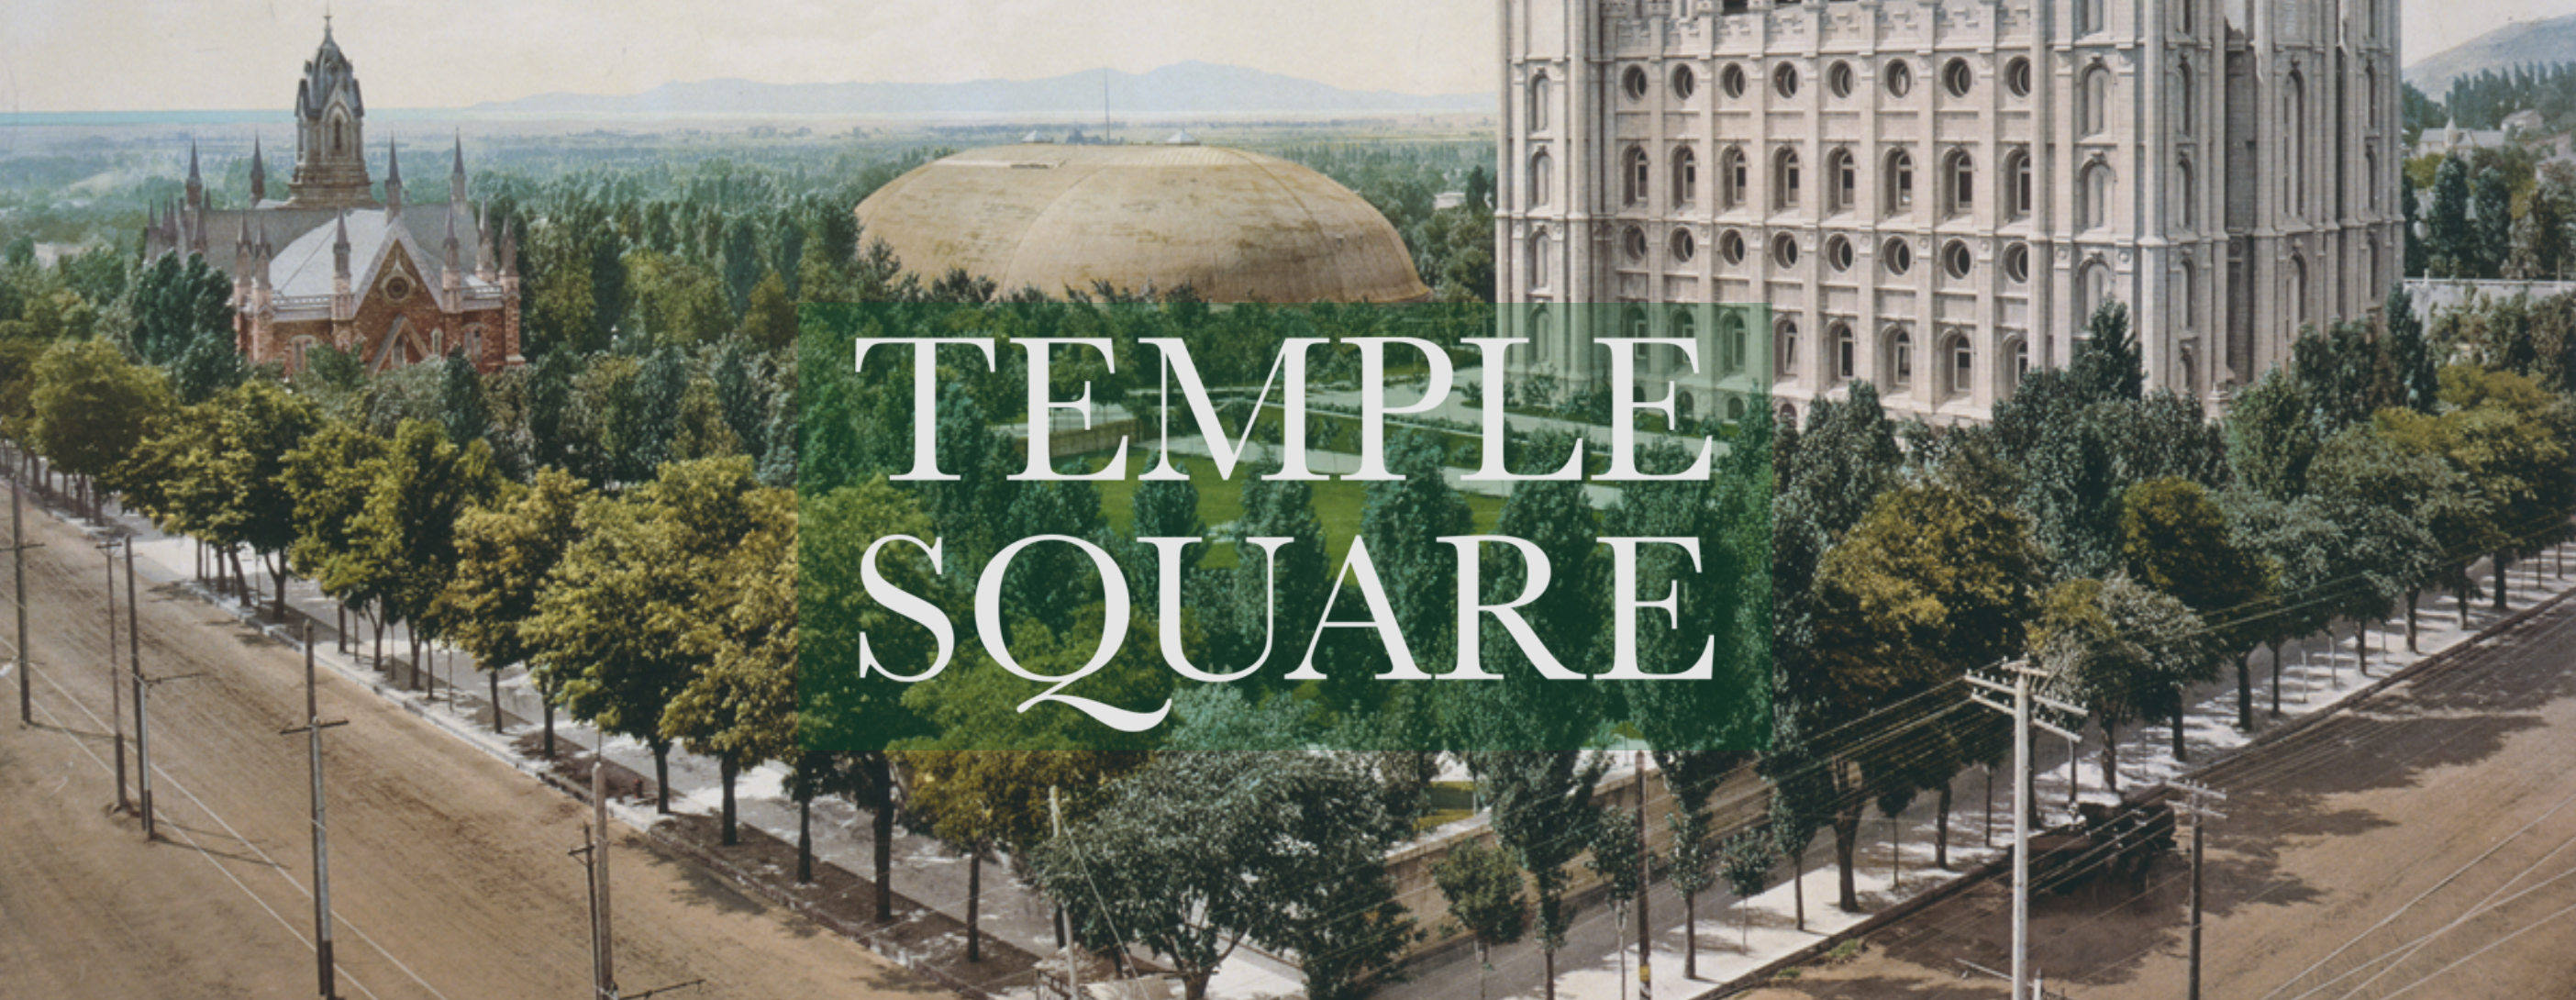 Temple Square 